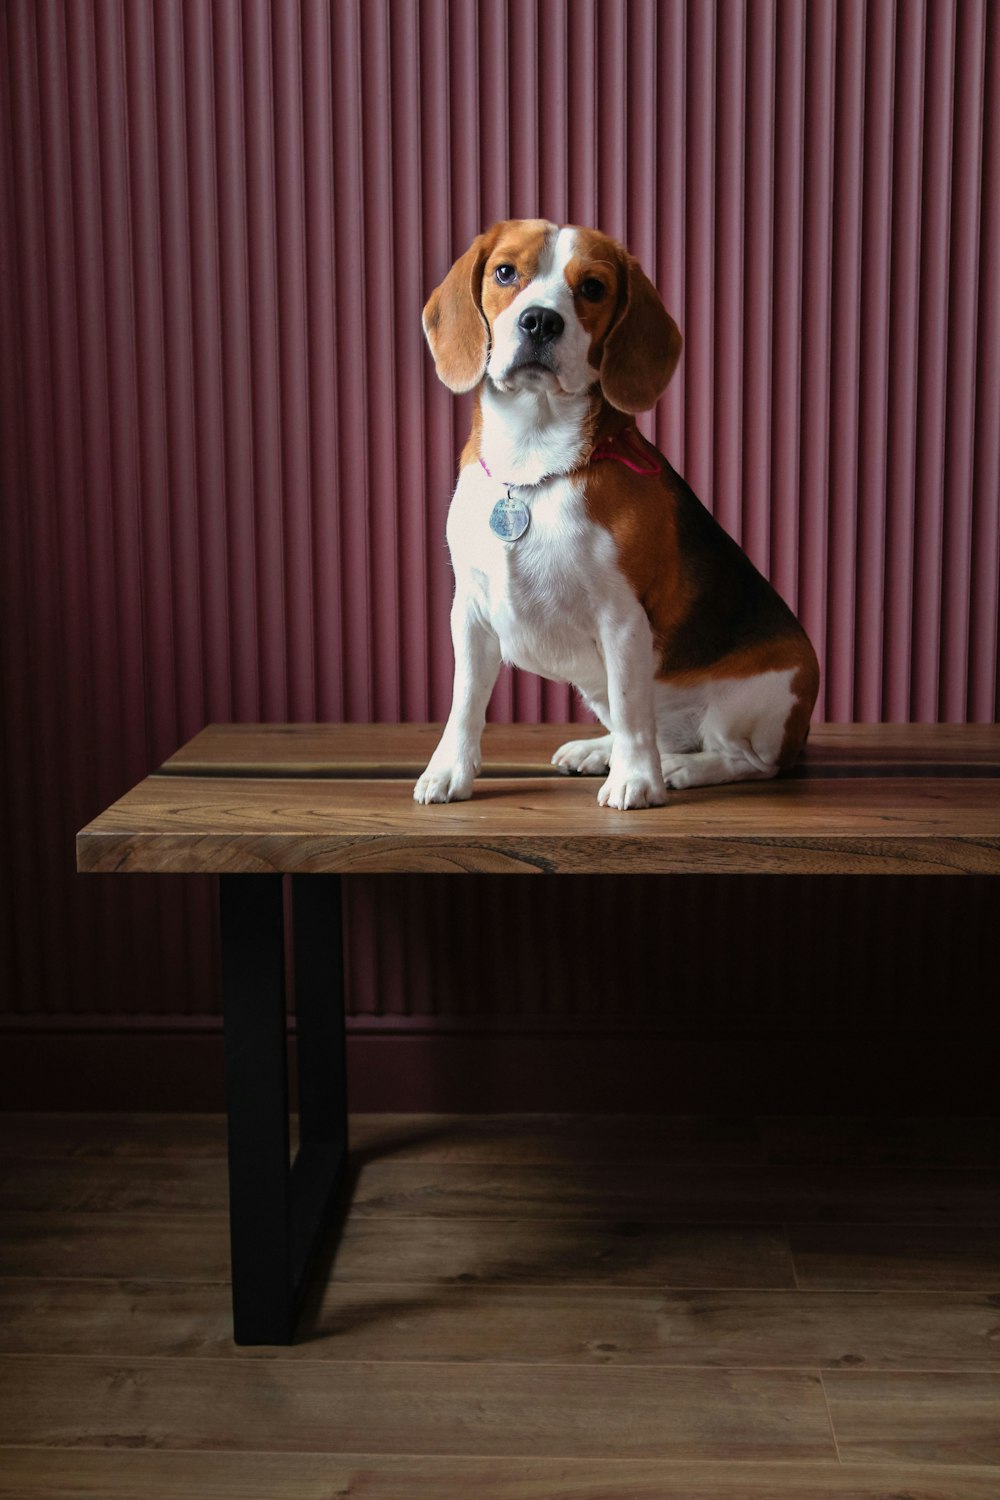 cane a pelo corto marrone e bianco seduto su un tavolo di legno marrone